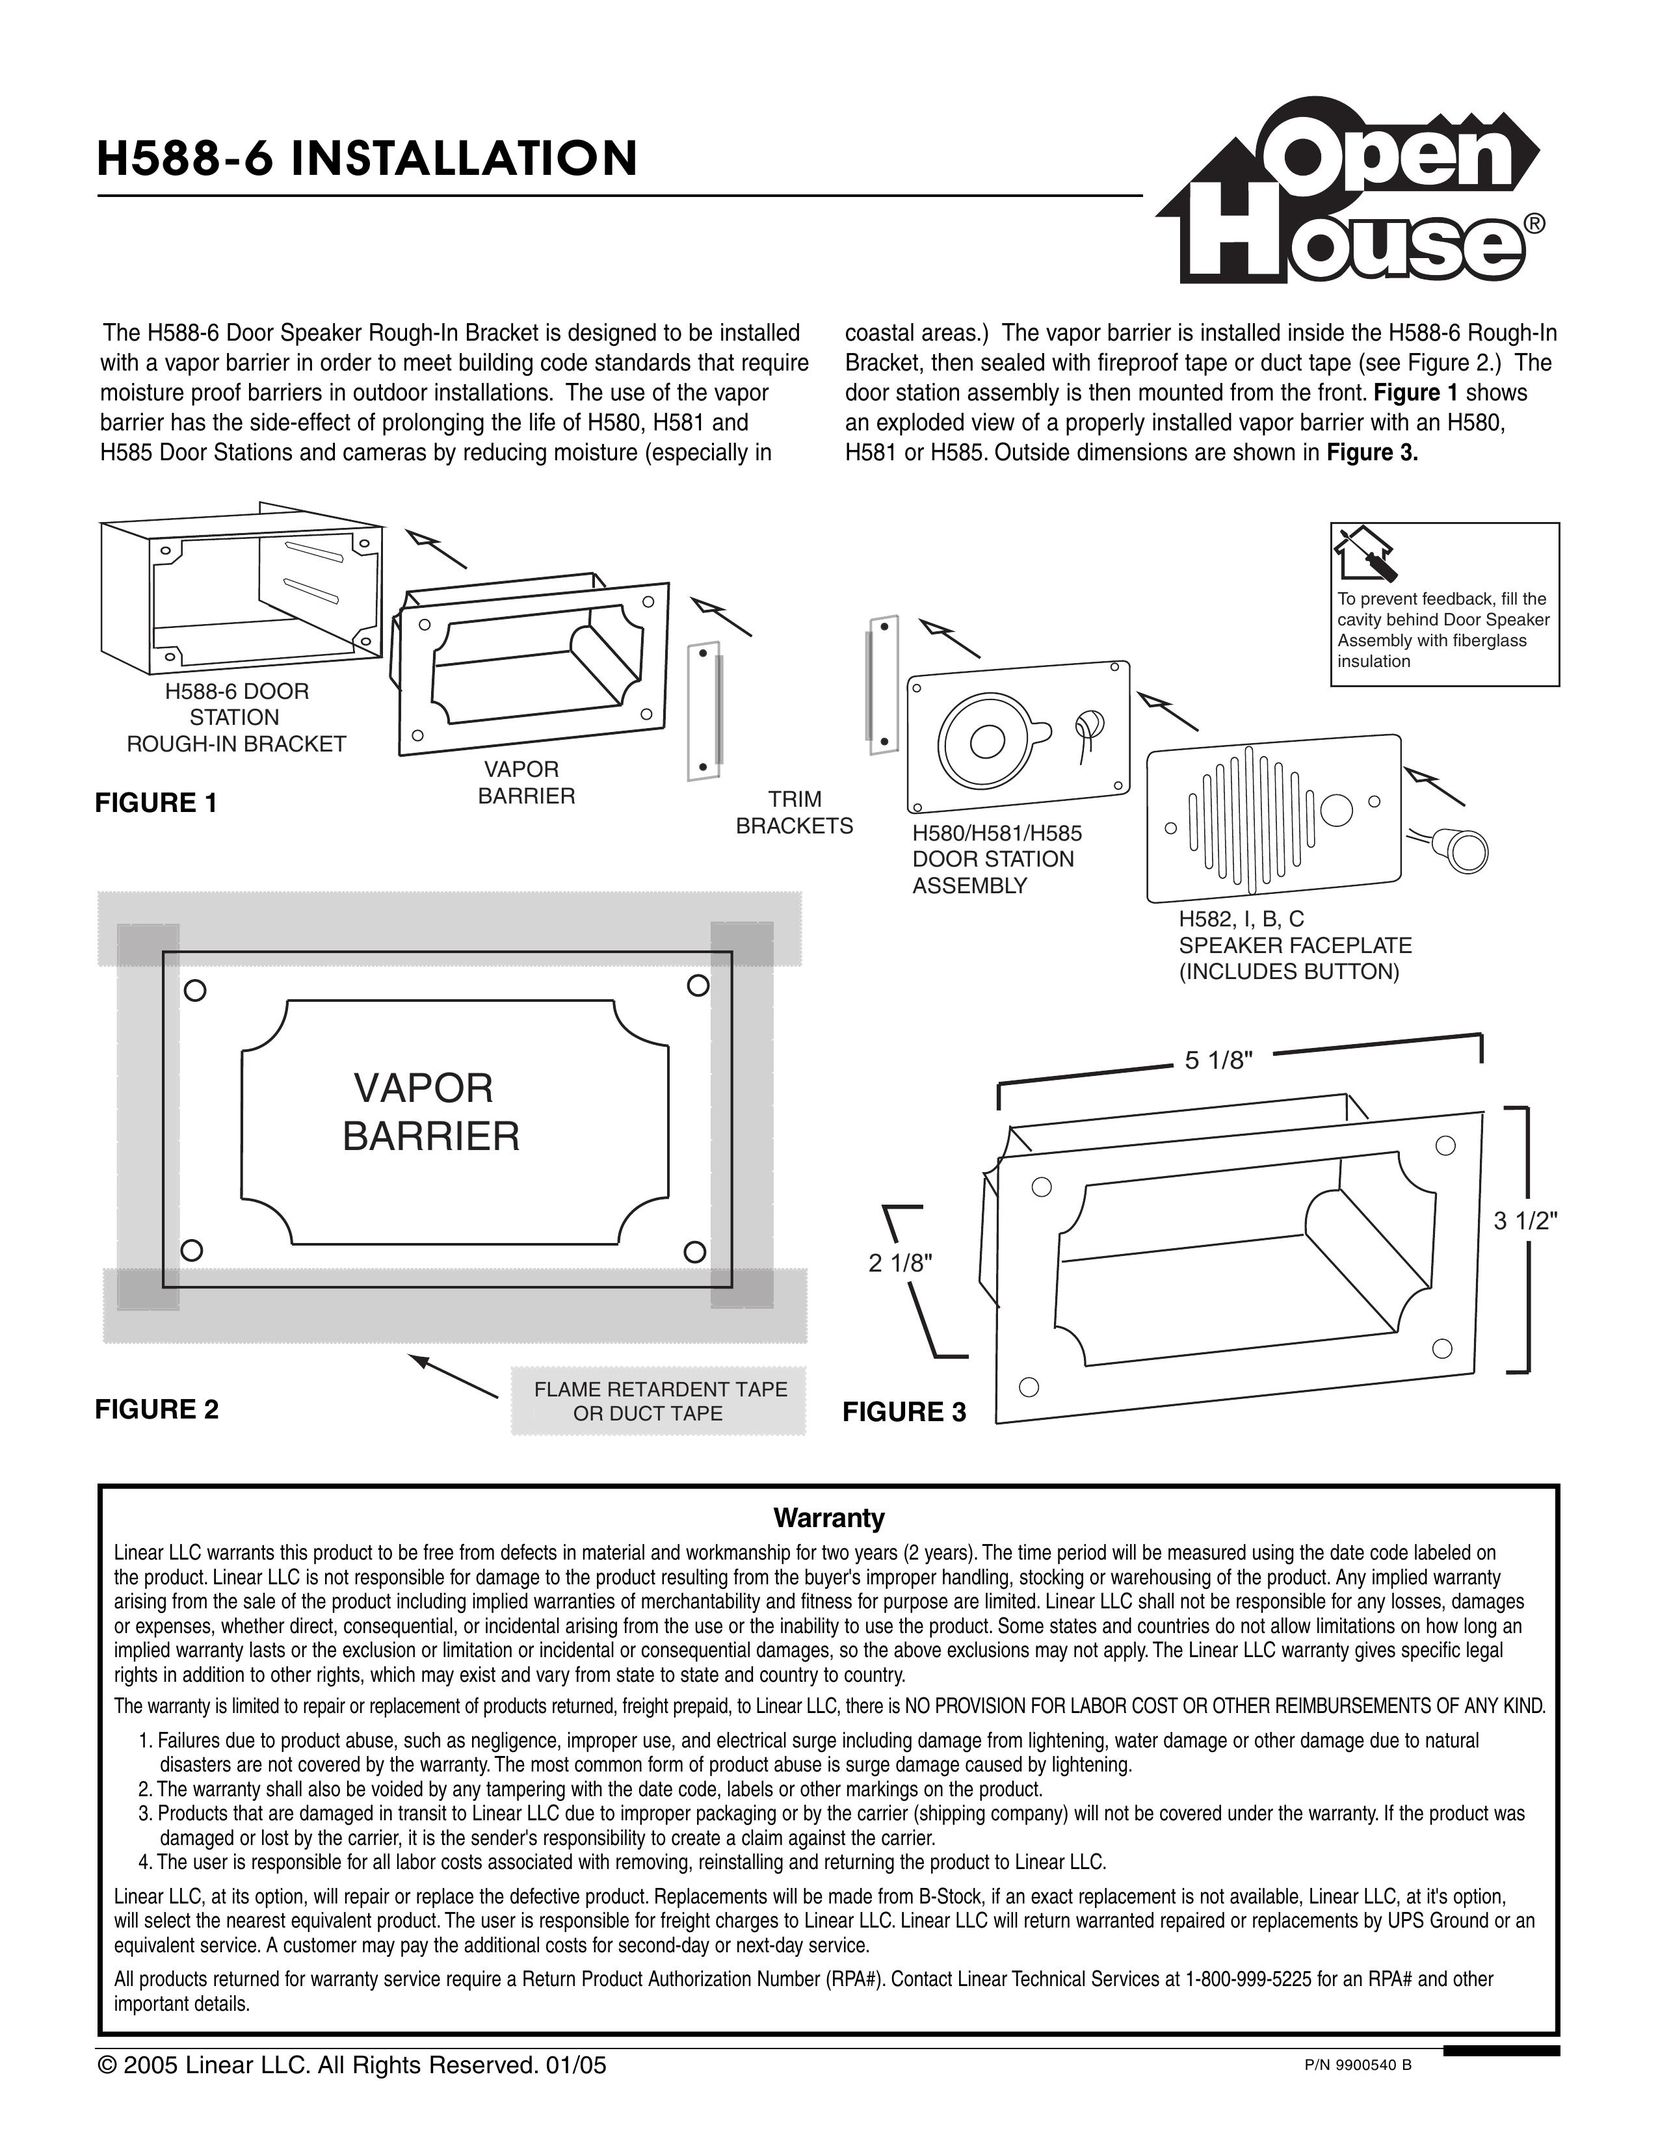 Linear H588-6 Speaker User Manual